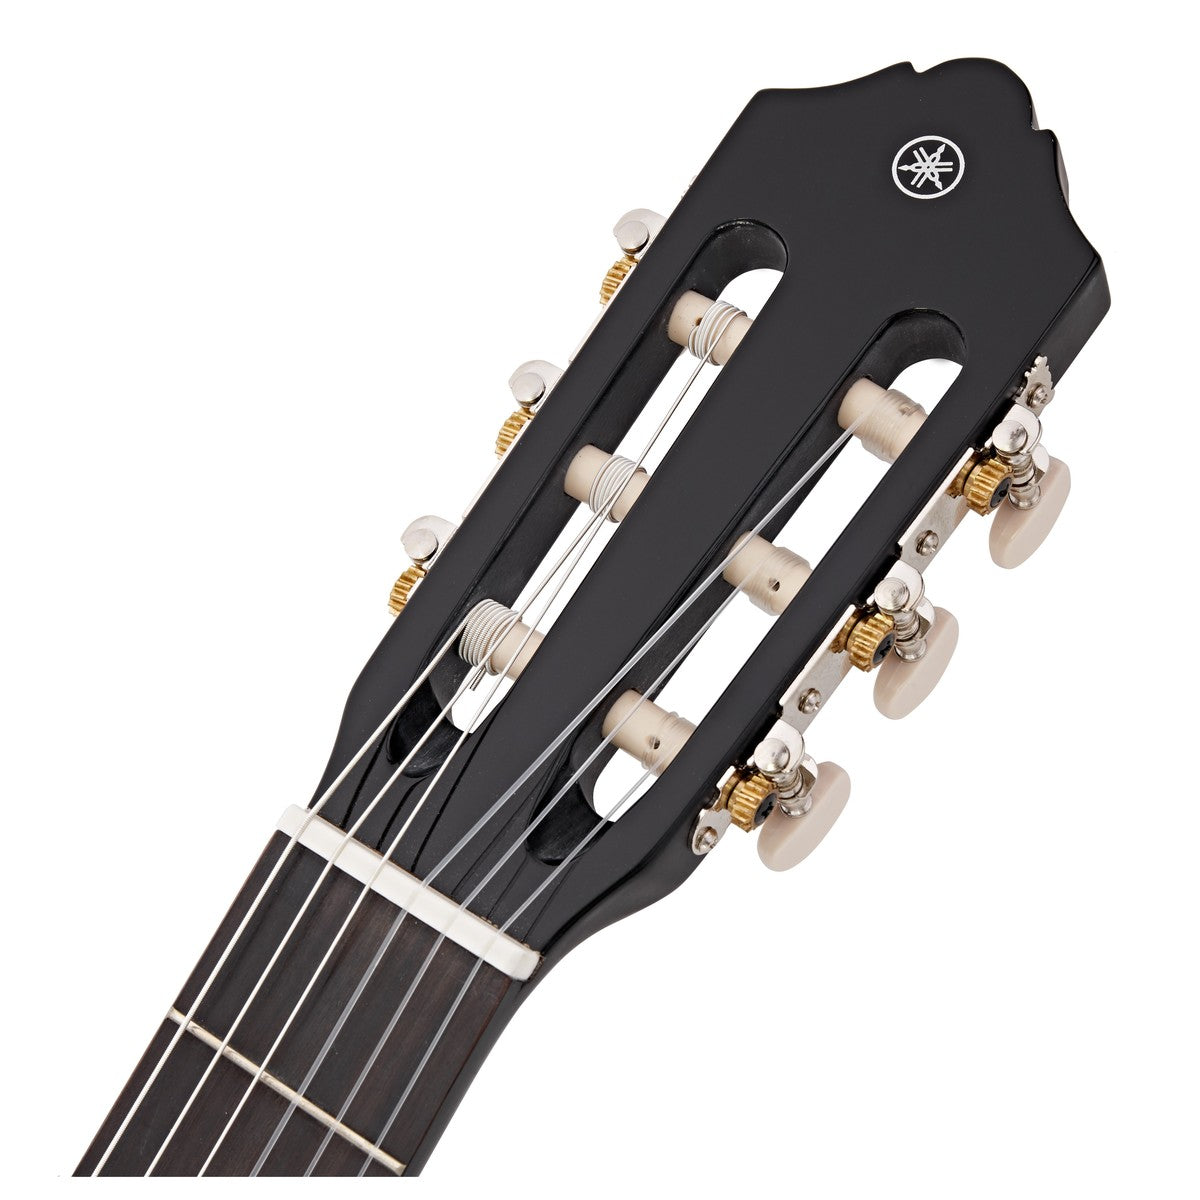 Yamaha C40BL Classical Guitar, Black